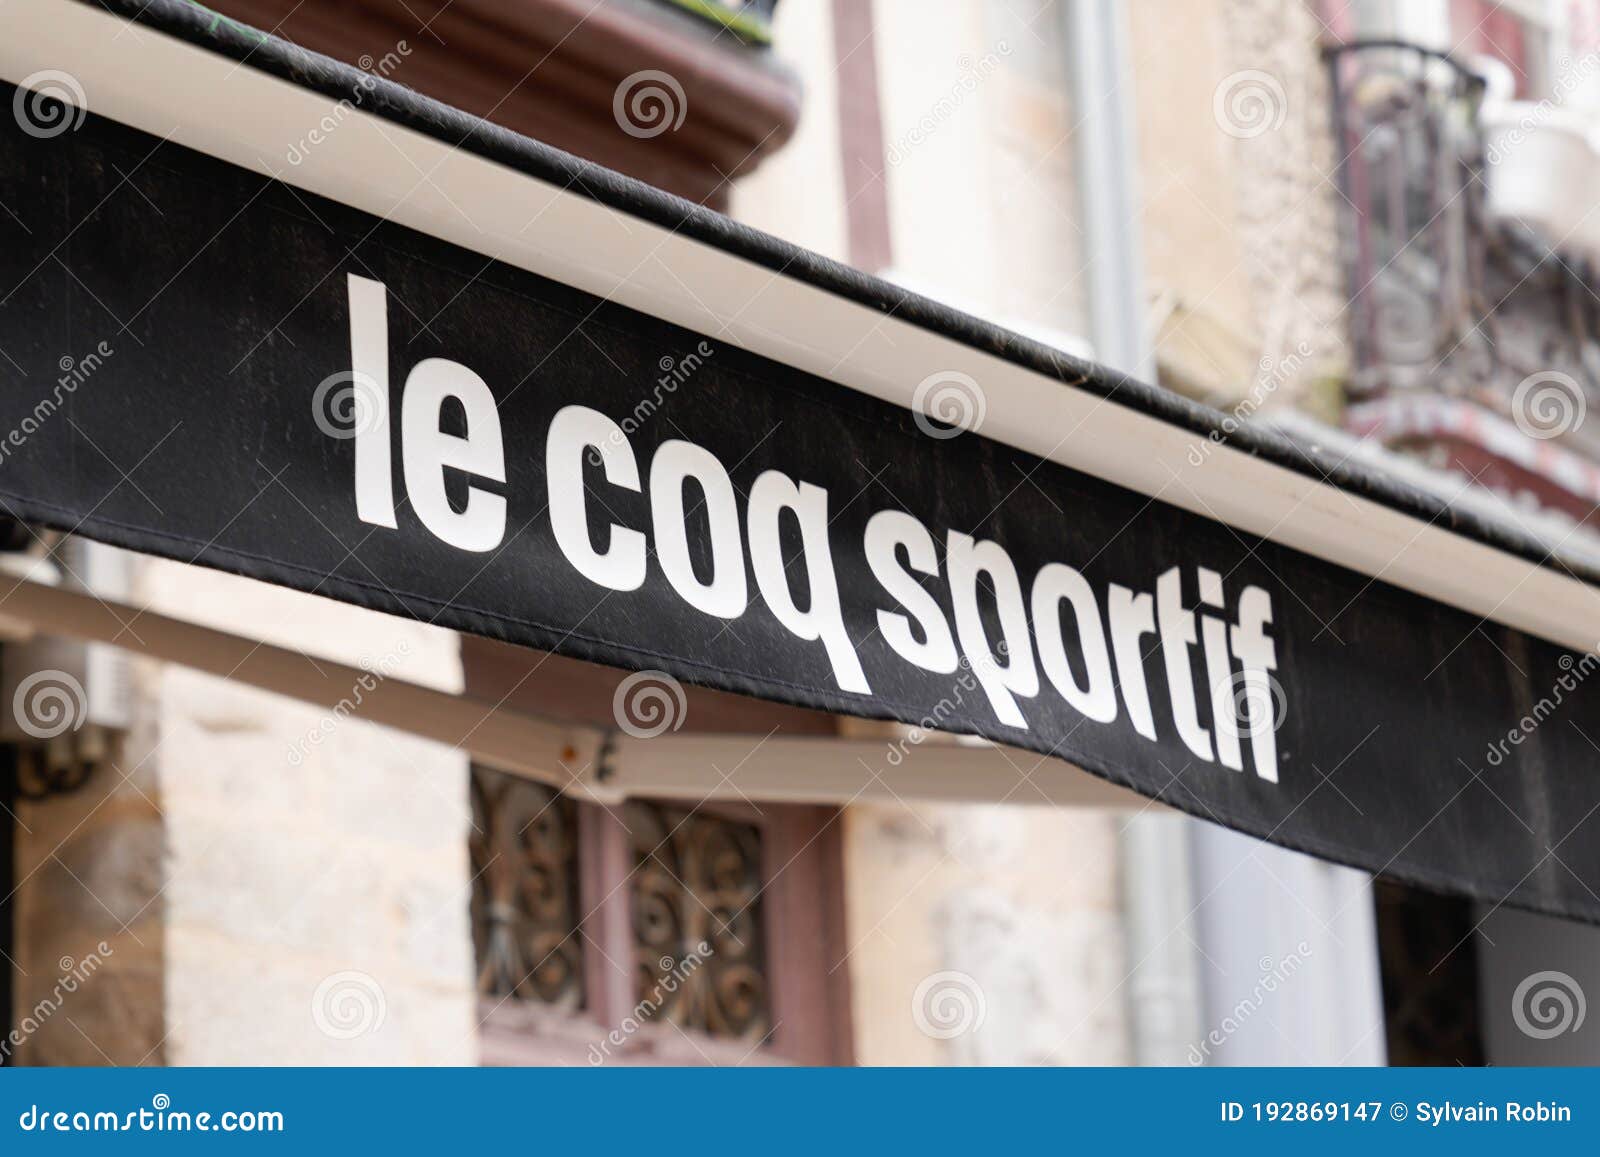 Bordeaux , Aquitaine / France - 08 04 2020 : Le Coq Sportif Logo and ...